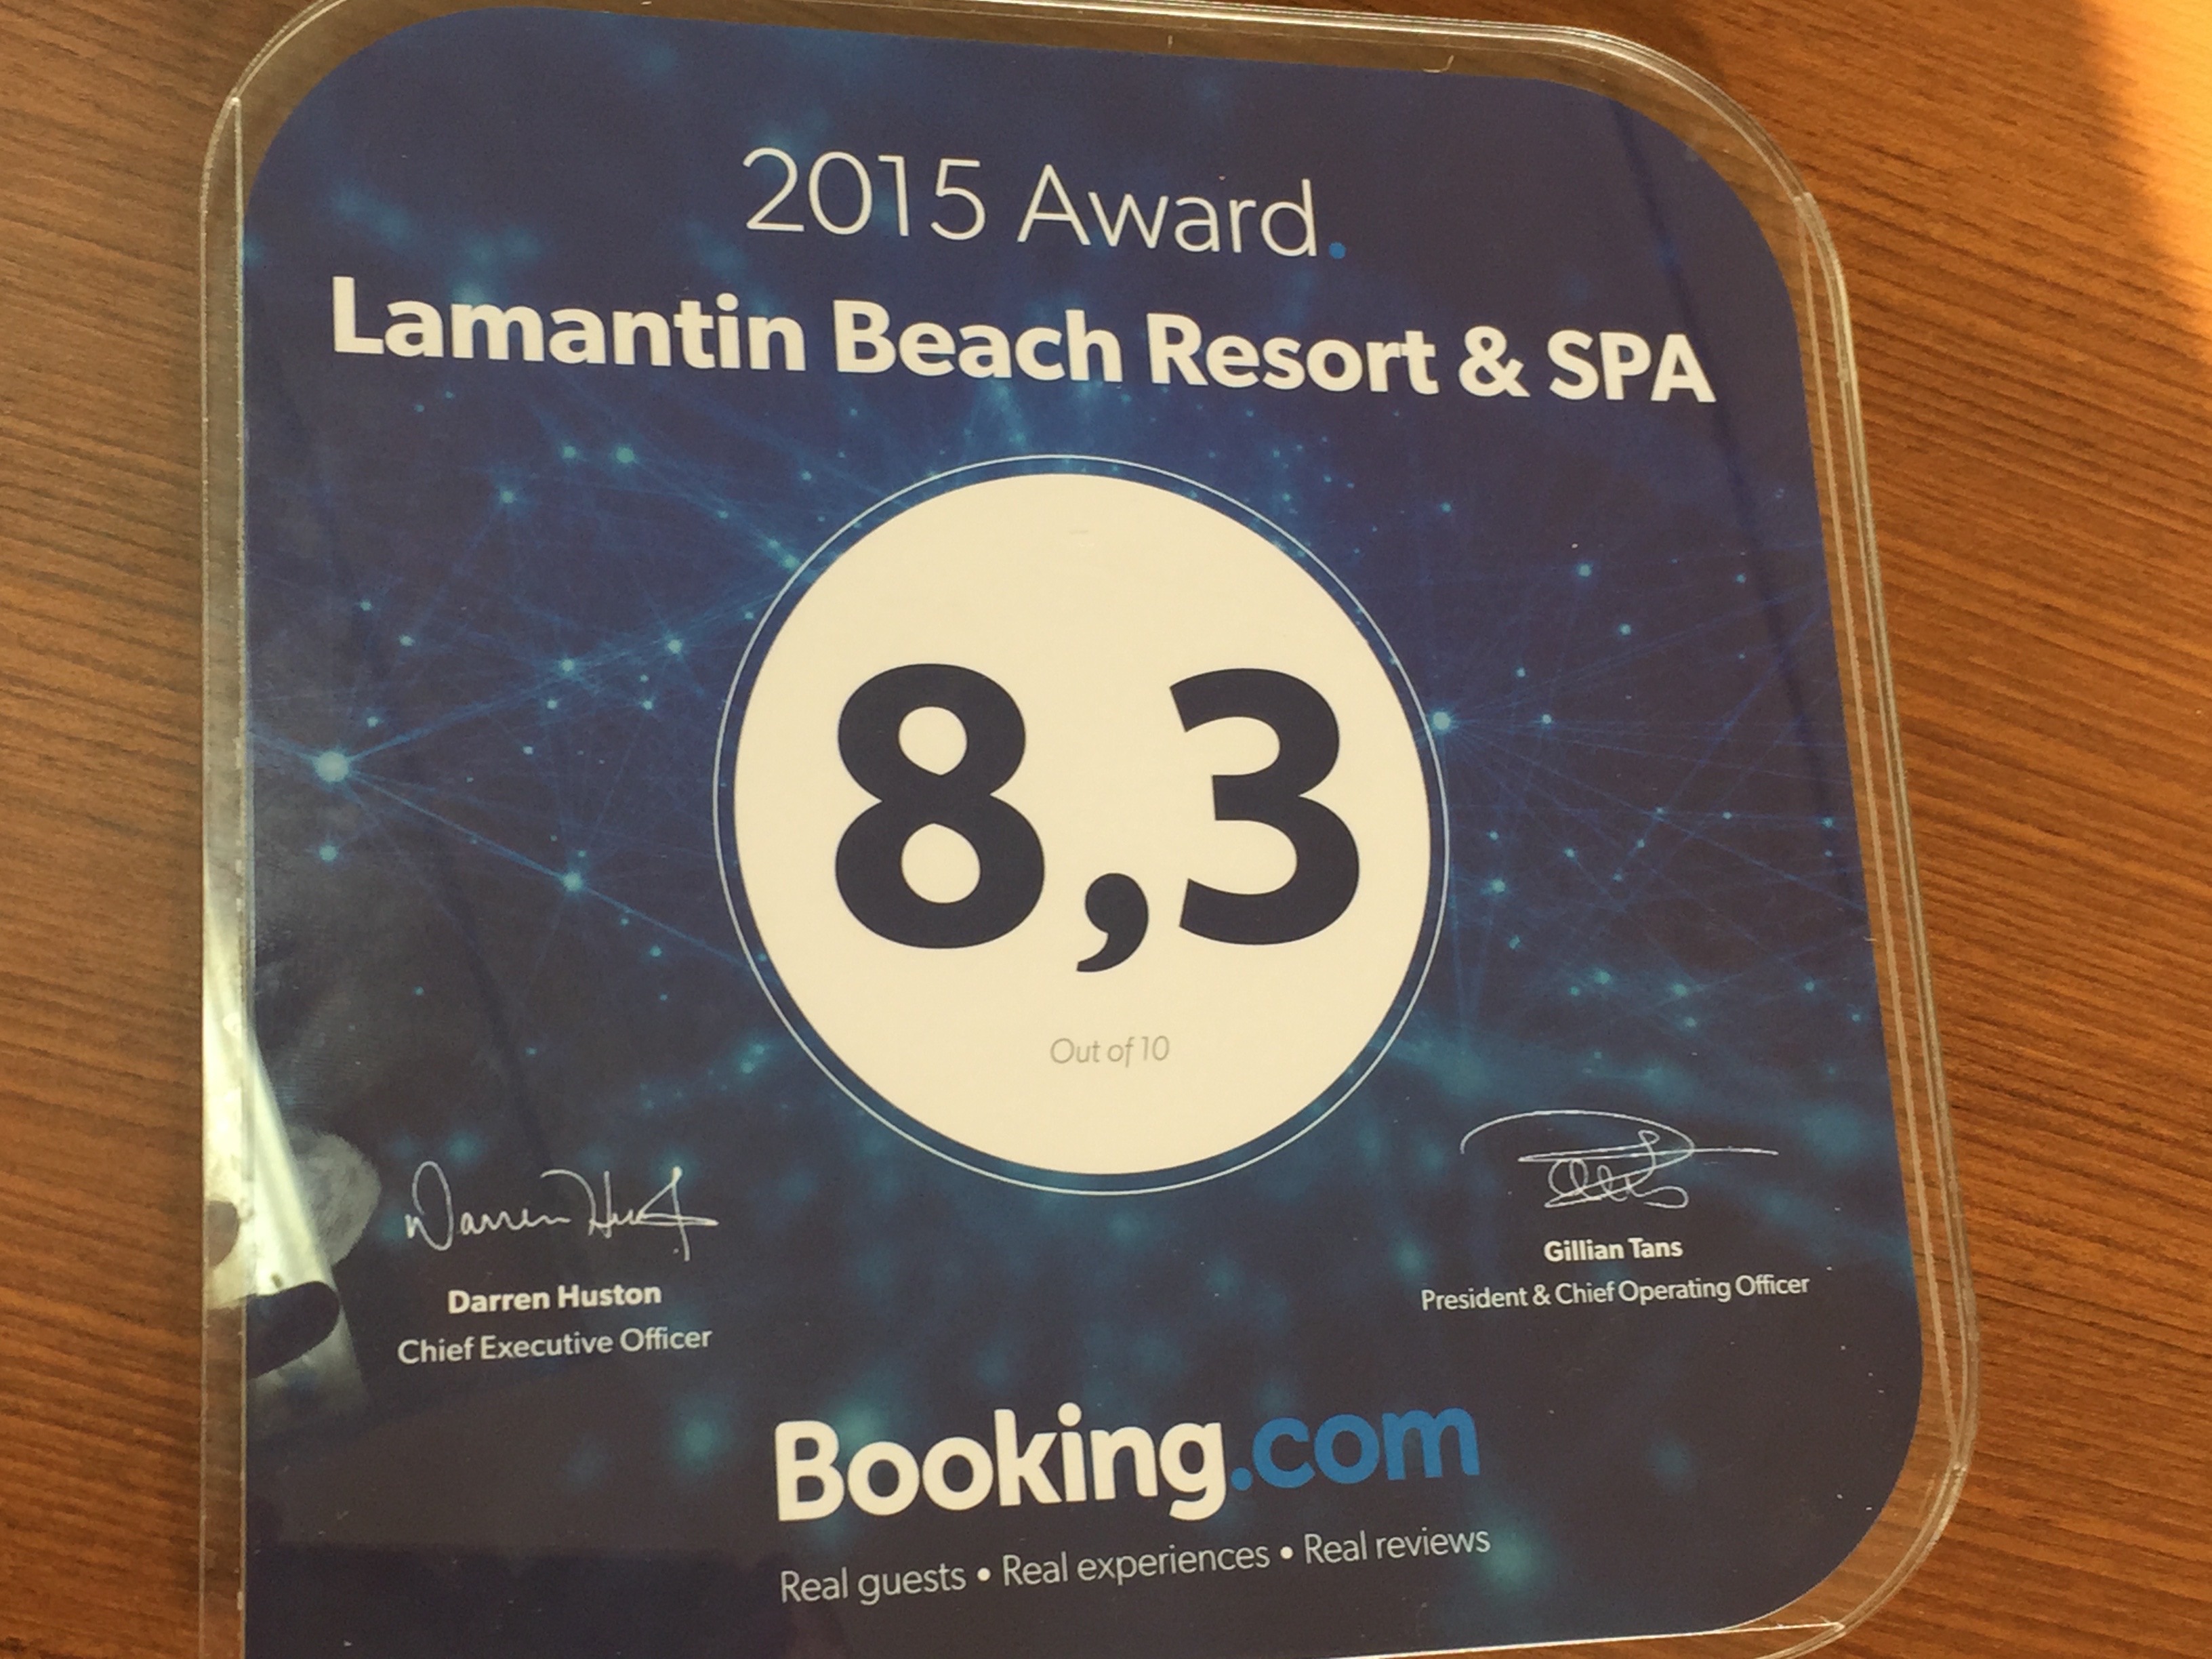 Le Lamantin Beach Resort and Spa de Saly obtient pour la deuxième année consécutive le Prix "Guest Review Award" par Booking.com.